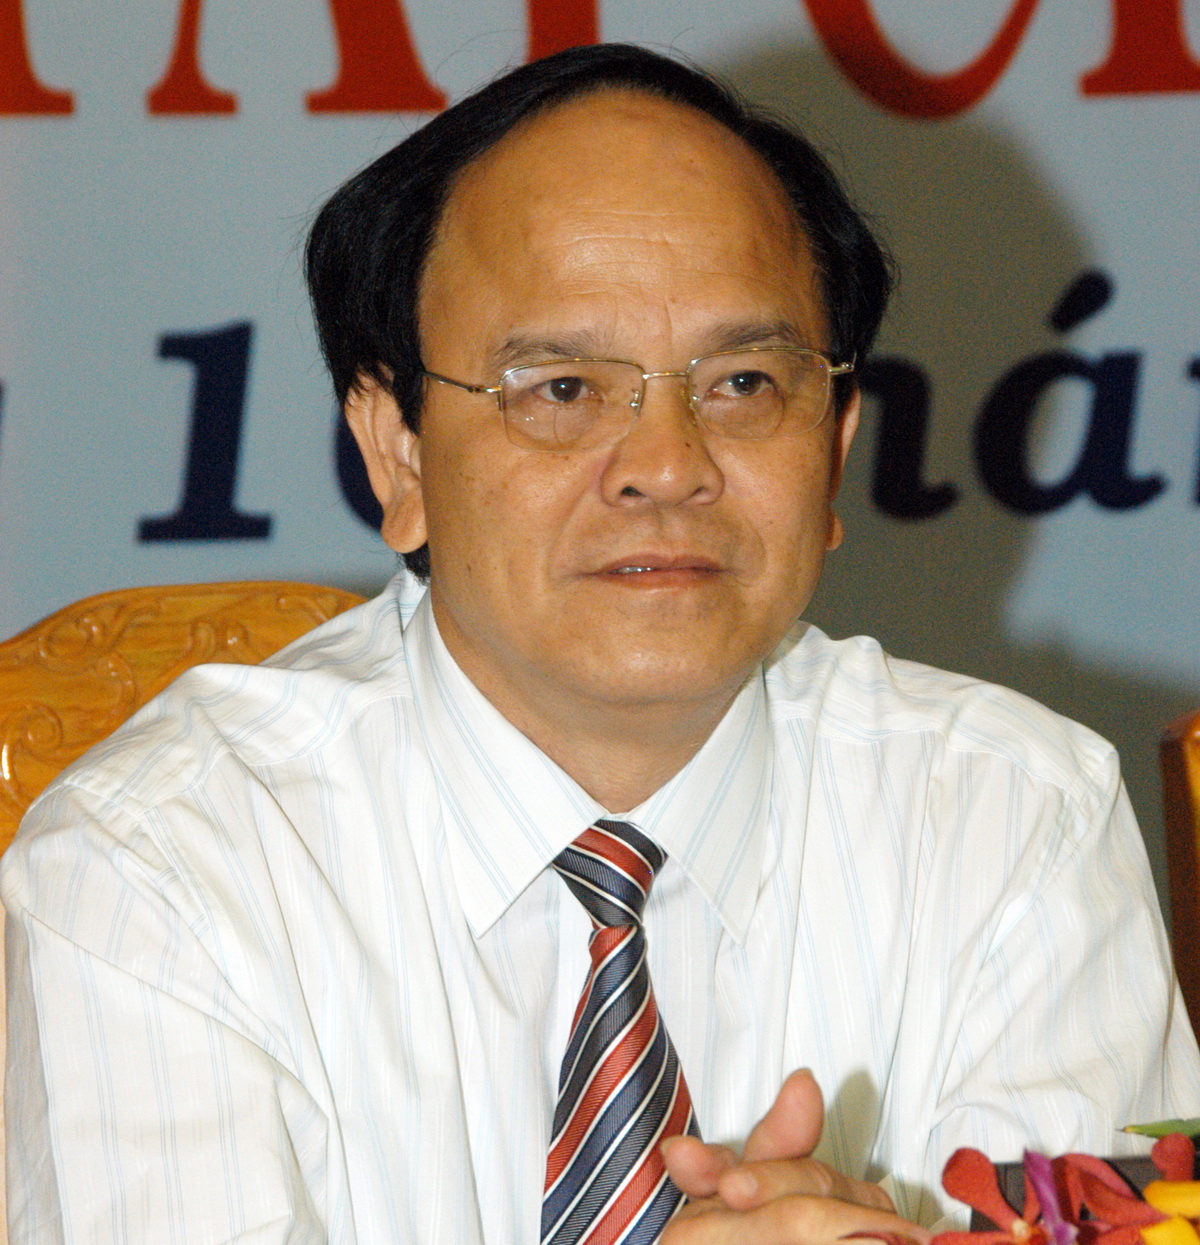 Ông Nguyễn Văn Thiện - nguyên bí thư tỉnh ủy Bình Định